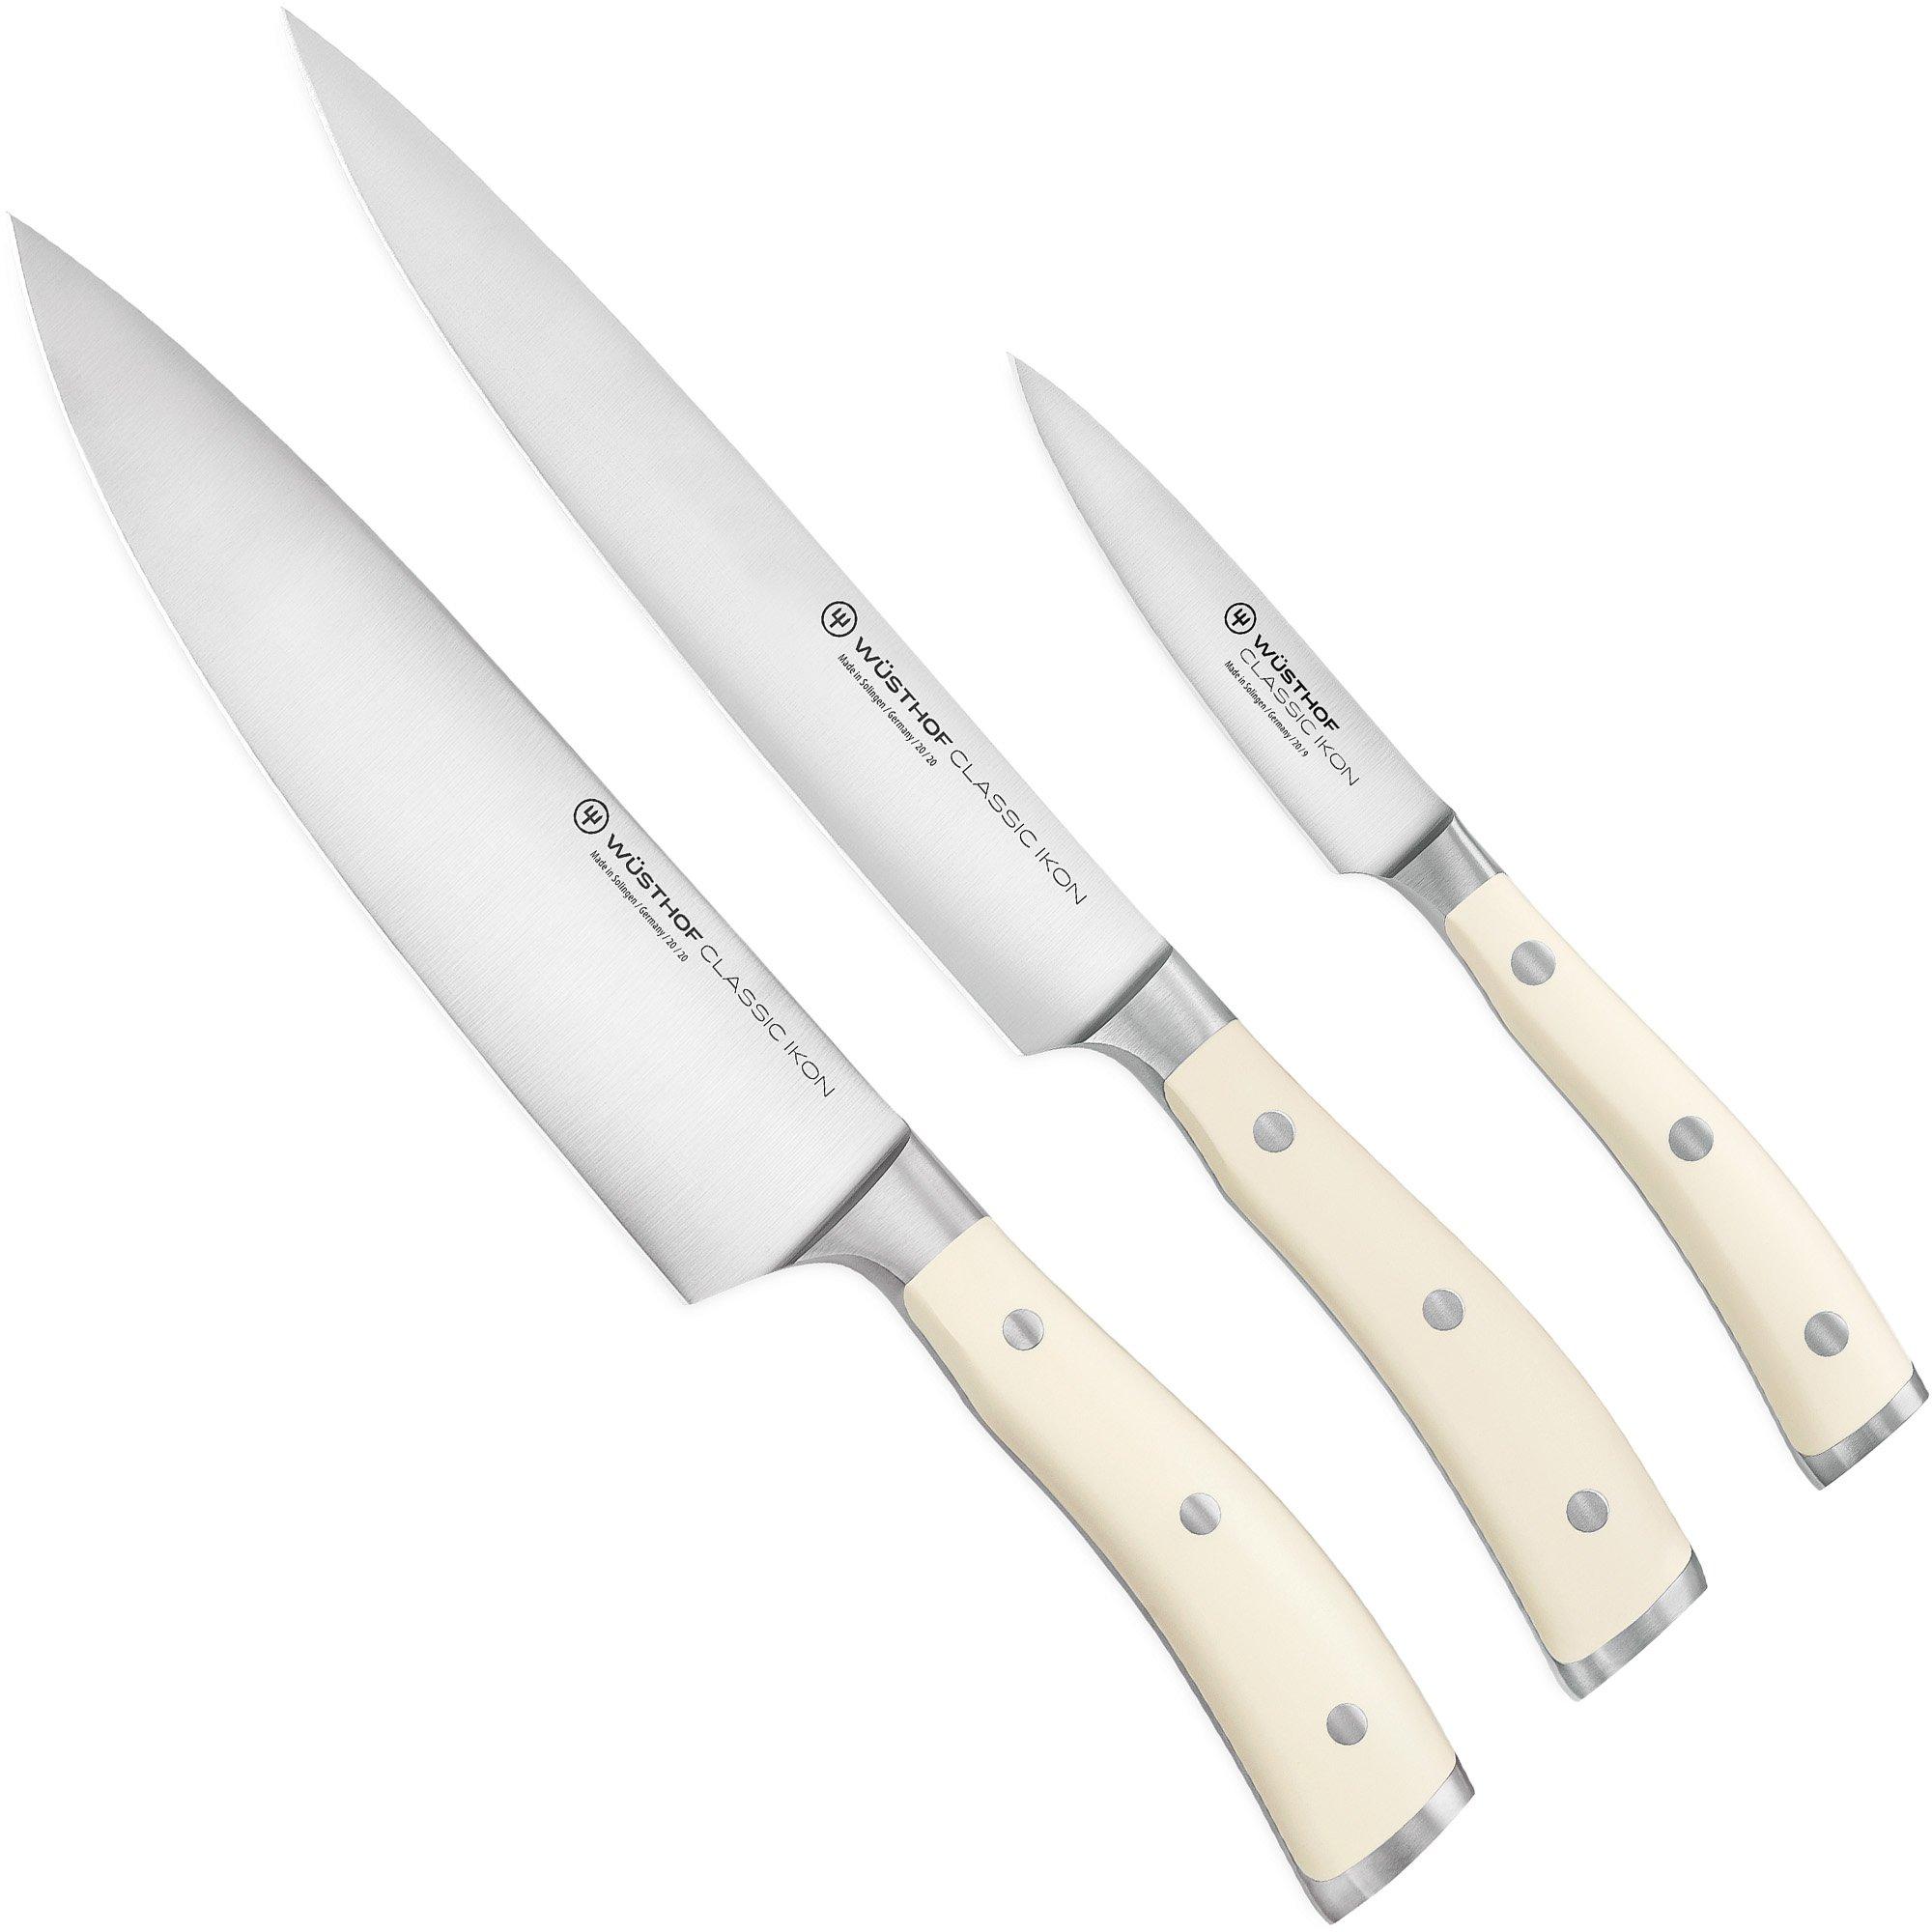 Wusthof Classic Ikon couteau à saucisson professionnel